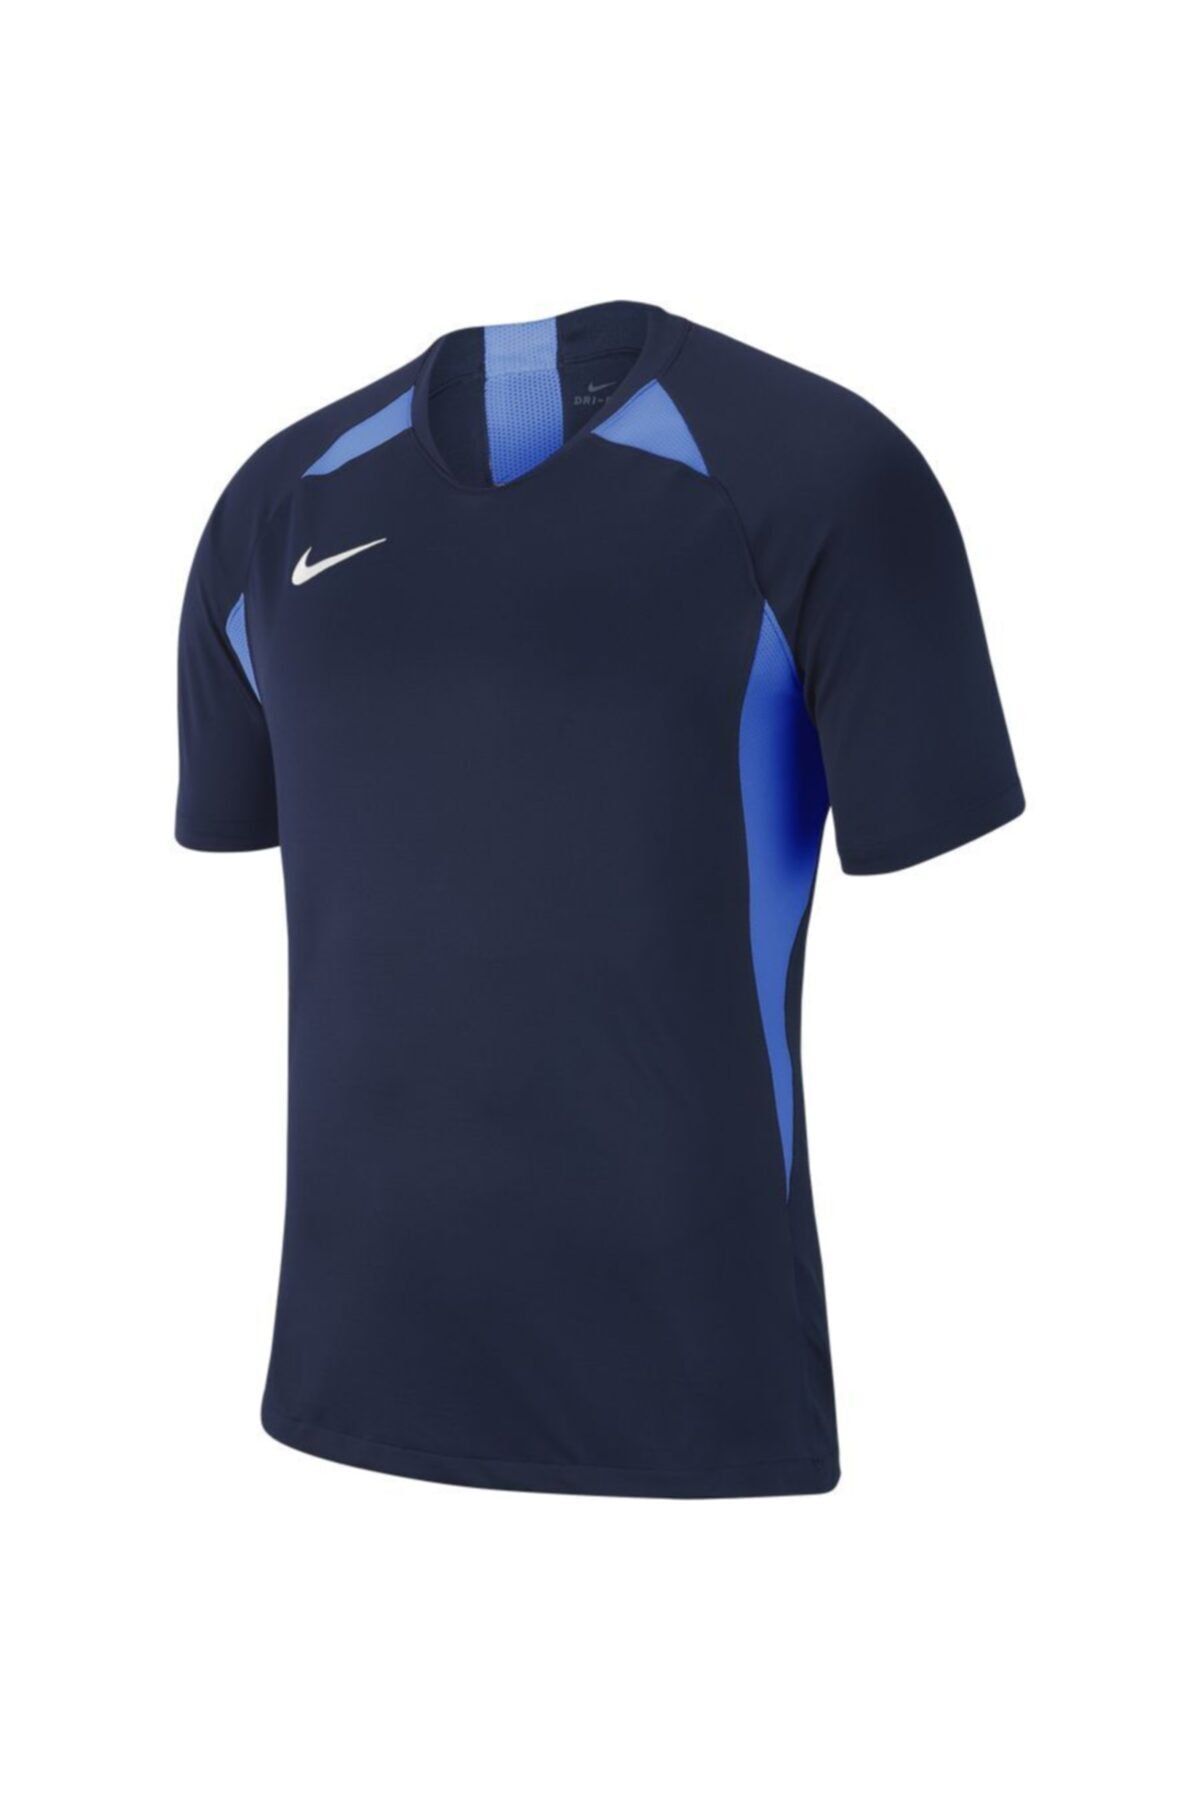 تیشرت ورزشی نایک مردانه آبی سرمه ای  Nike